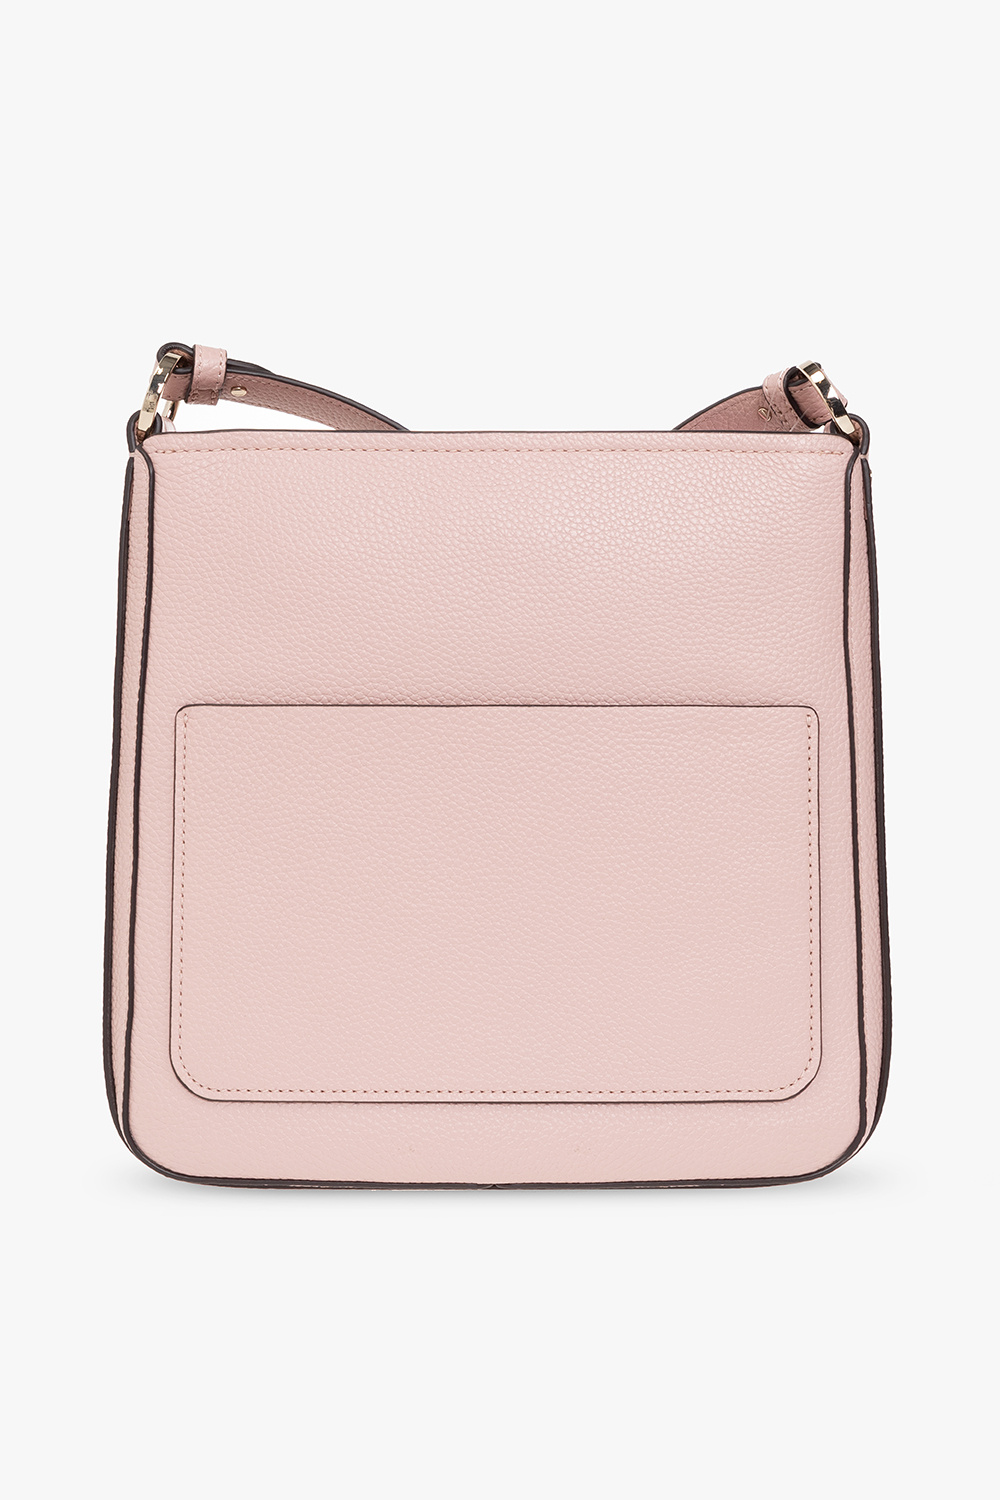 Kate Spade ‘Hudson Small’ shoulder bag